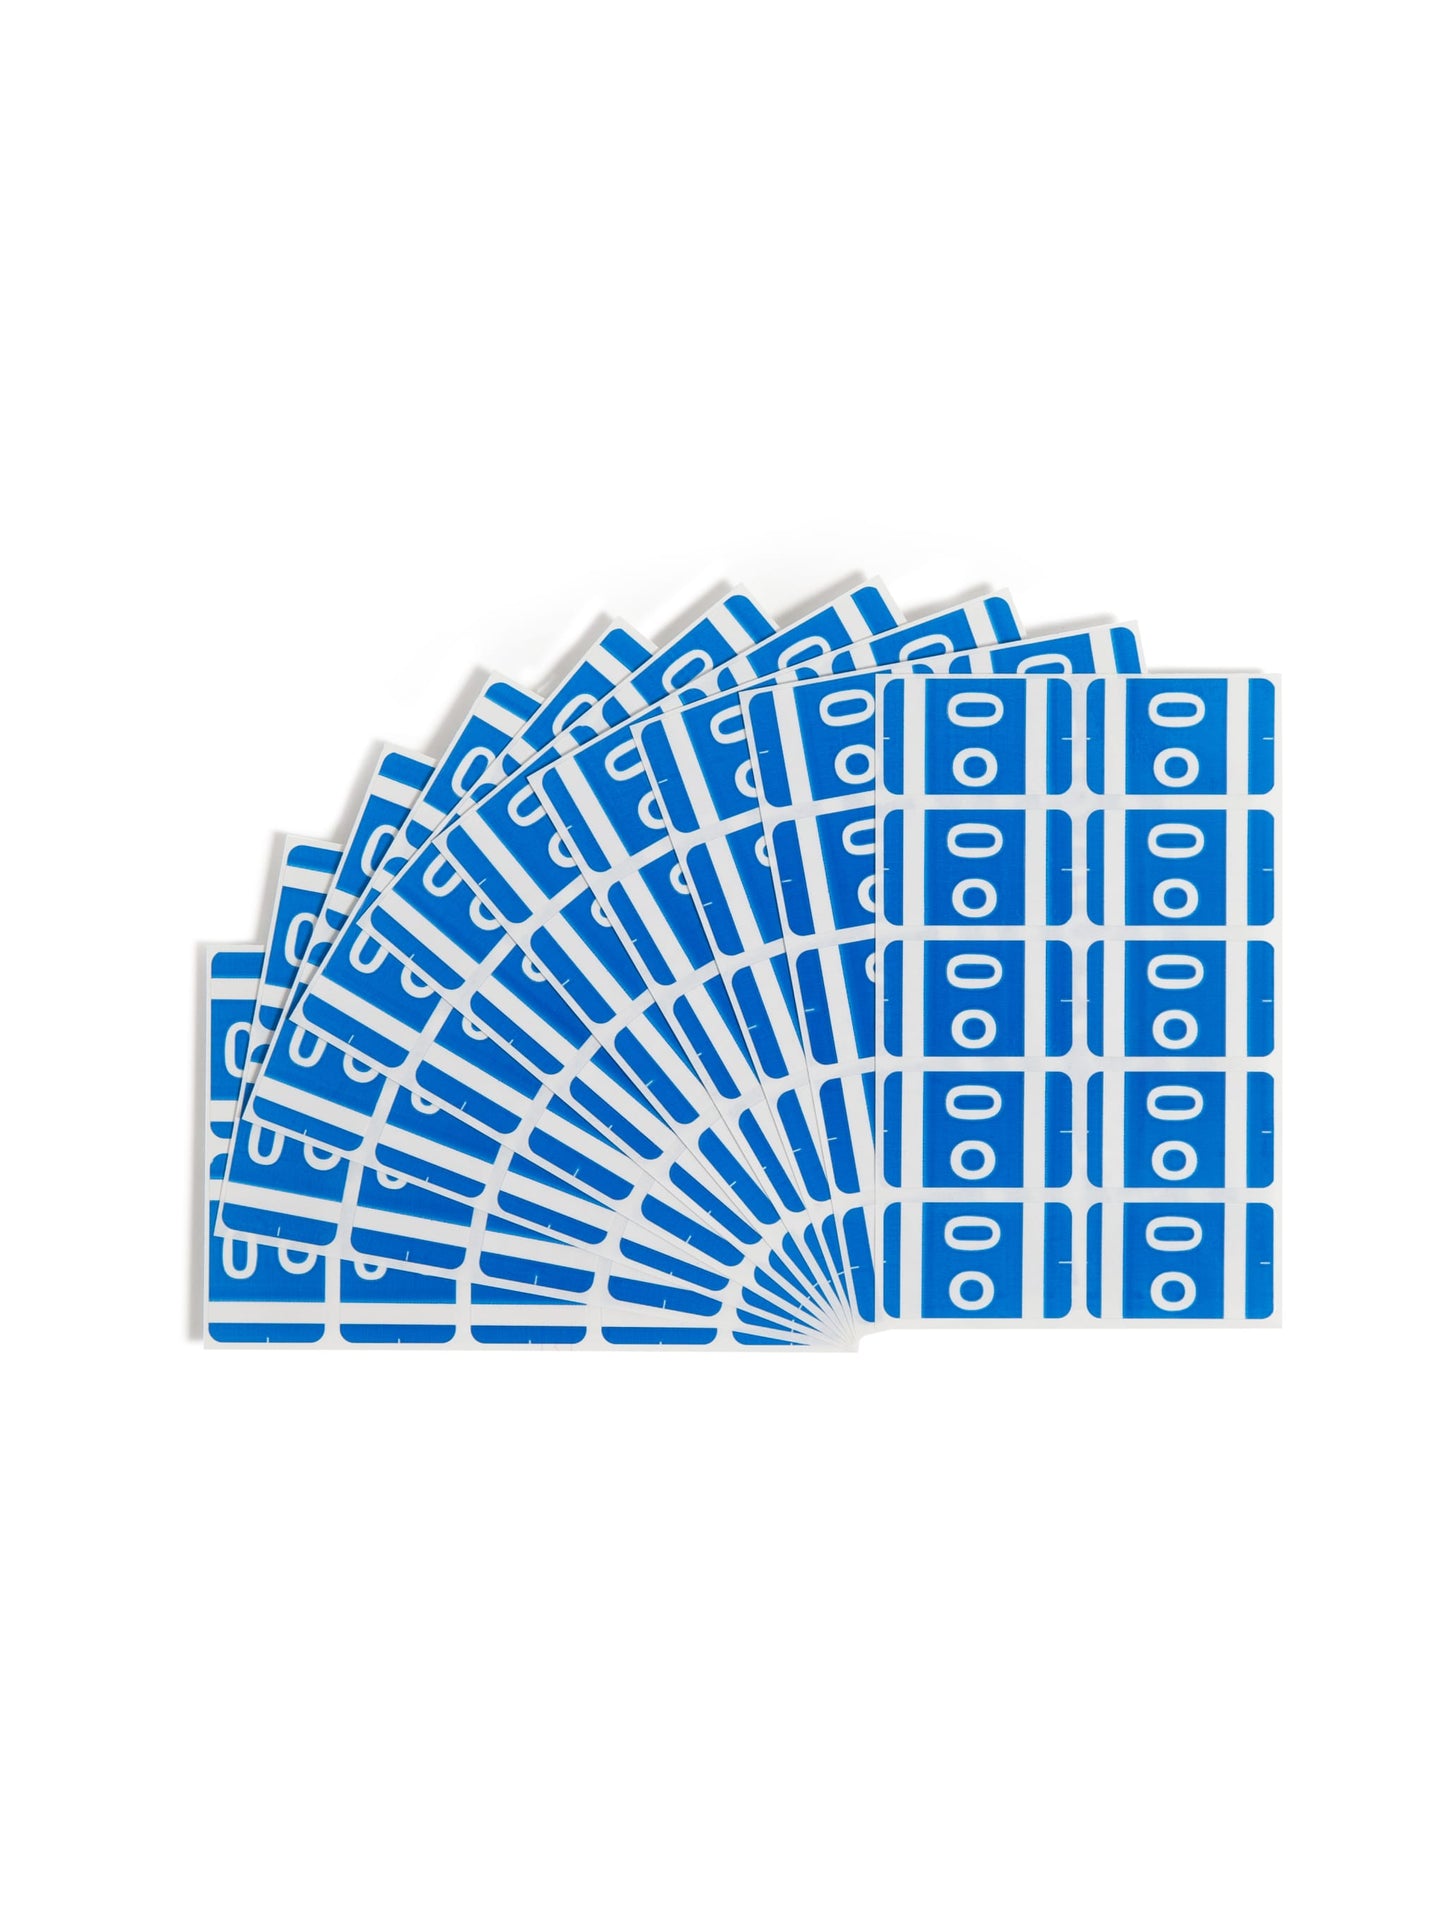 AlphaZ® ACCS Color Coded Alphabetic Labels - Sheets, Dark Blue Color, 1" X 1-5/8" Size, Set of 1, 086486671859